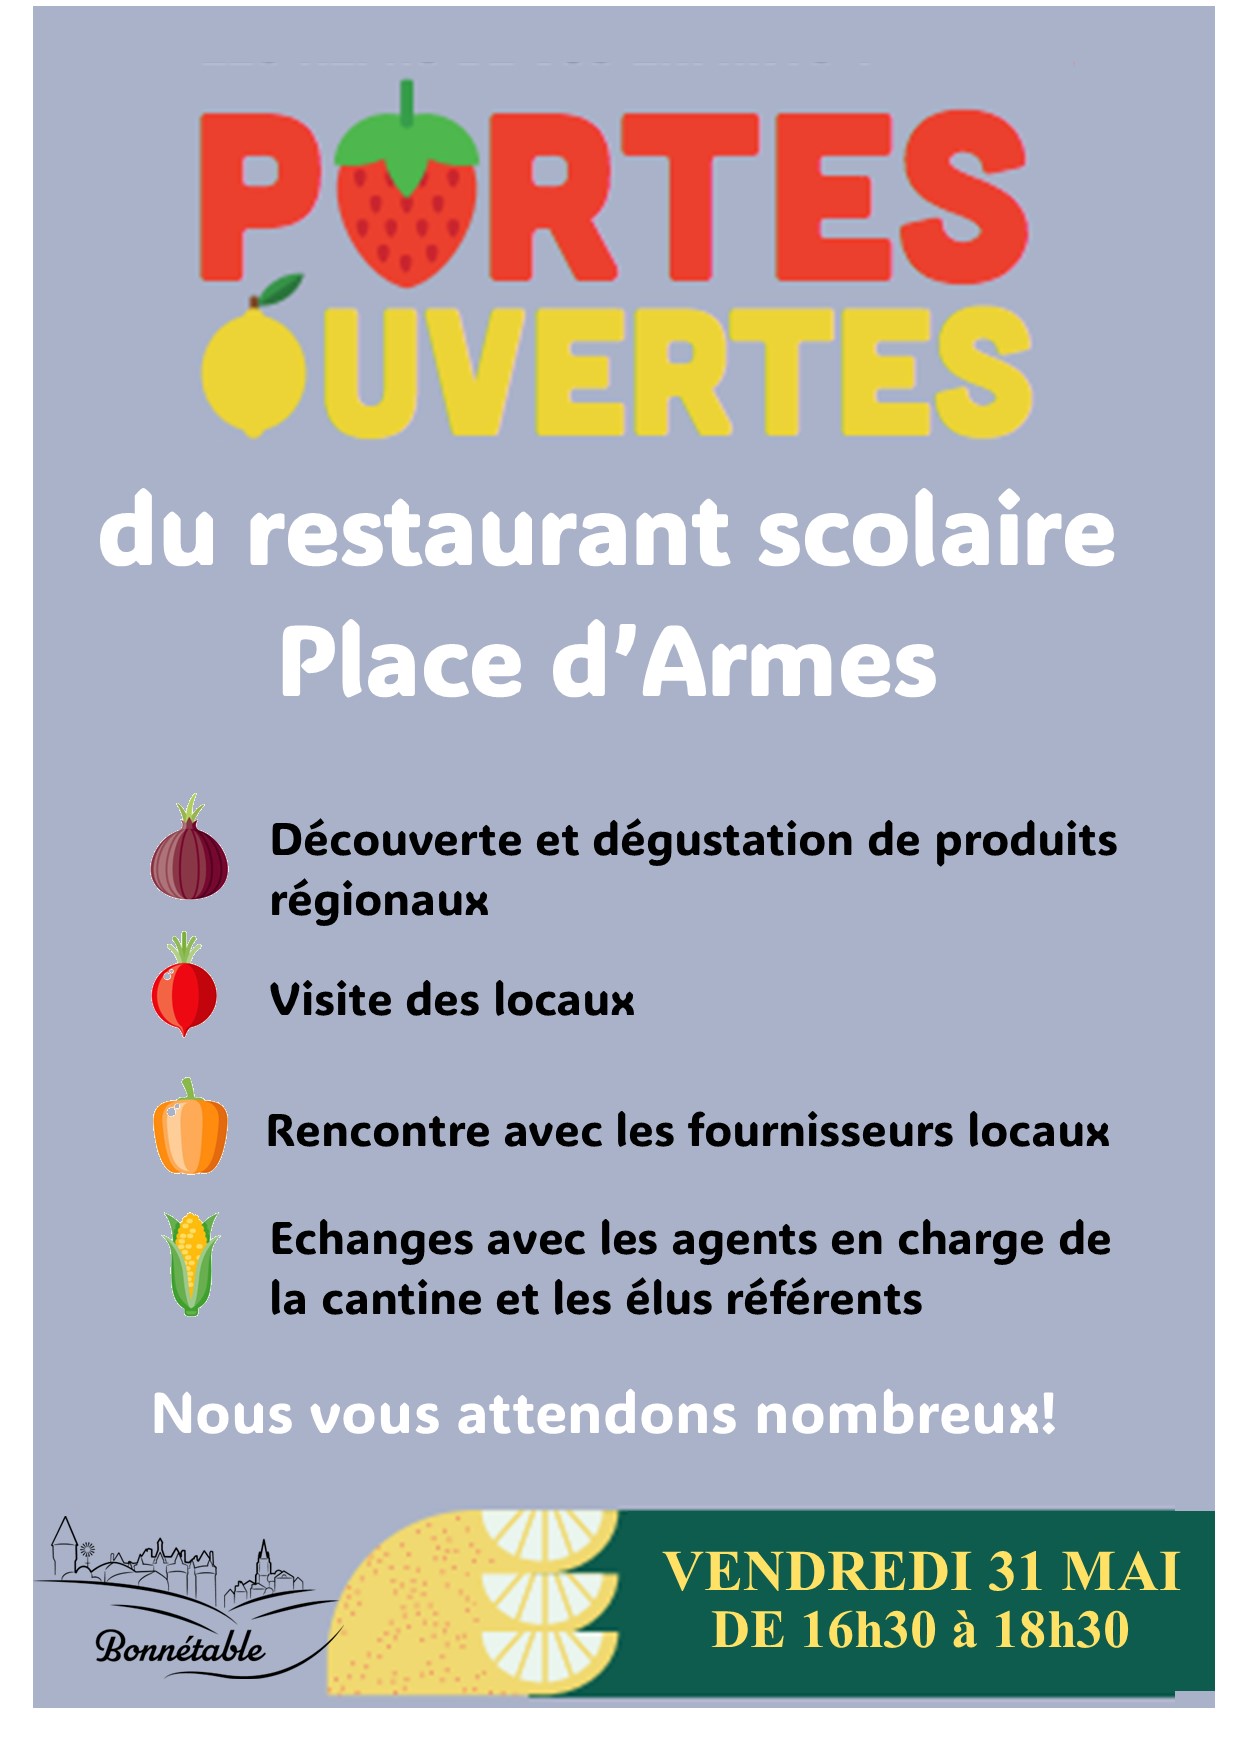 Vendredi 31 mai : portes ouvertes du restaurant scolaire place d'Armes